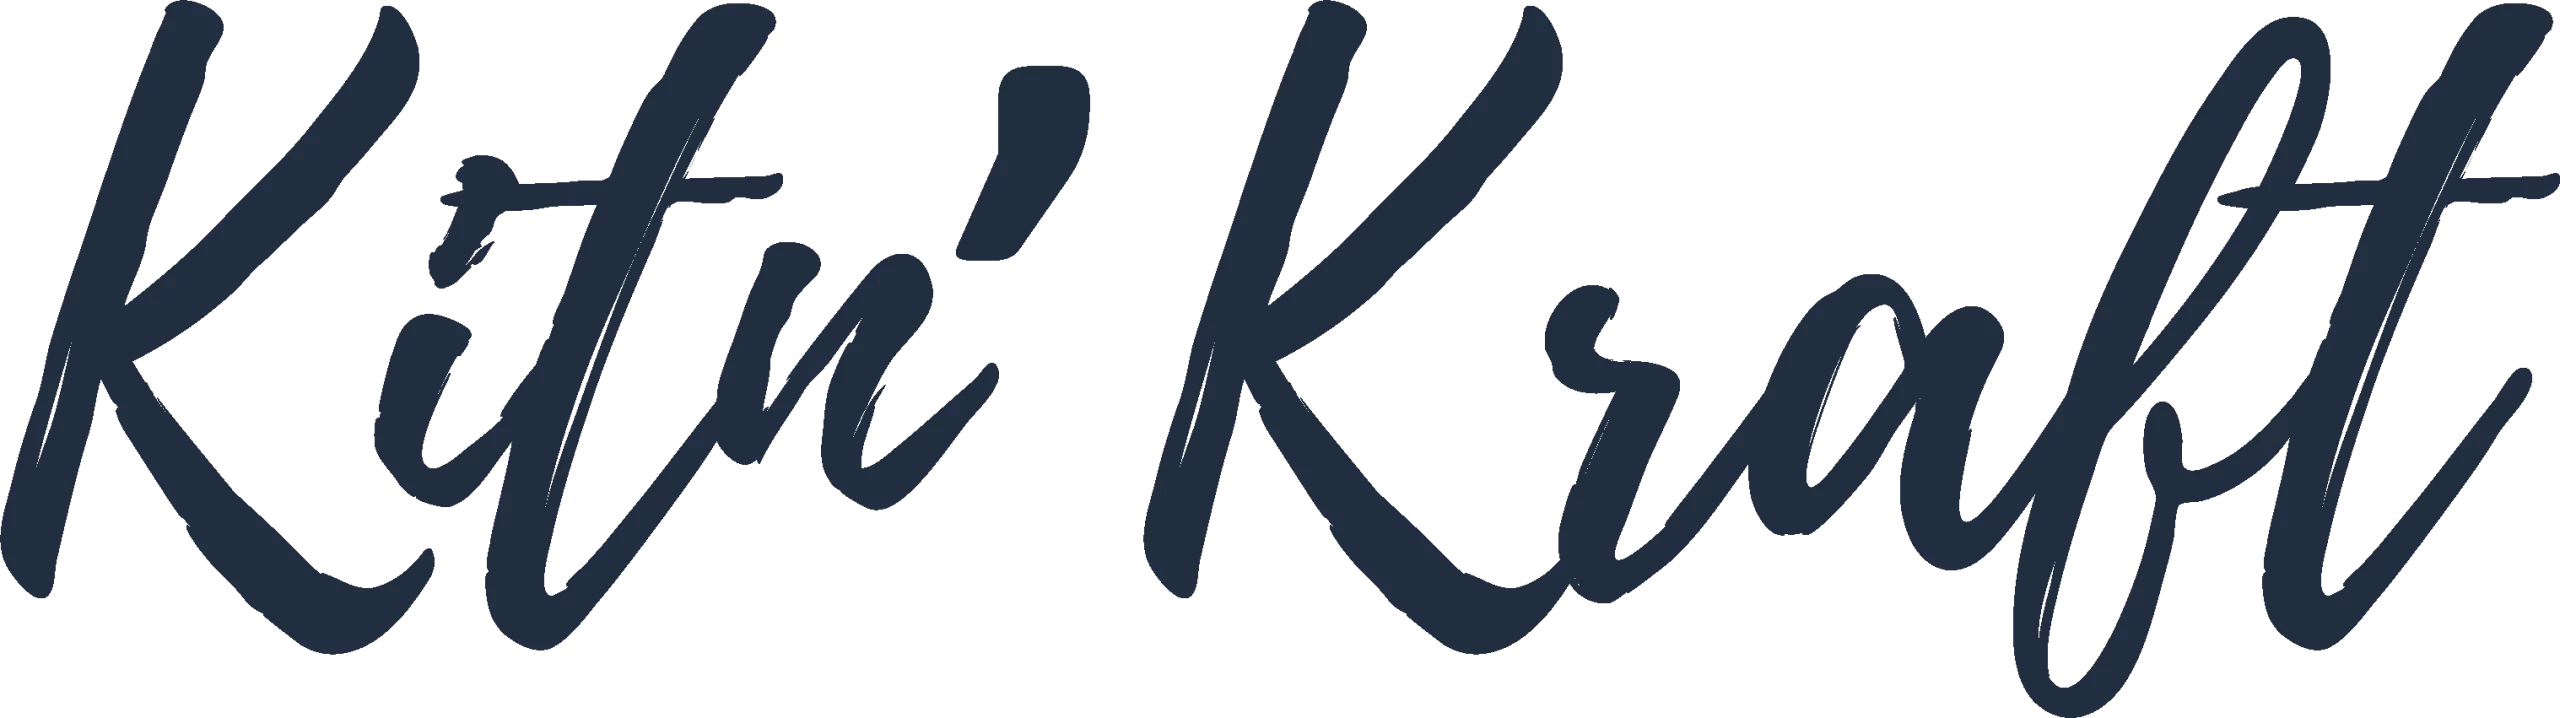 Logo bleu de la marque de loisir creatif Kit and Kraft